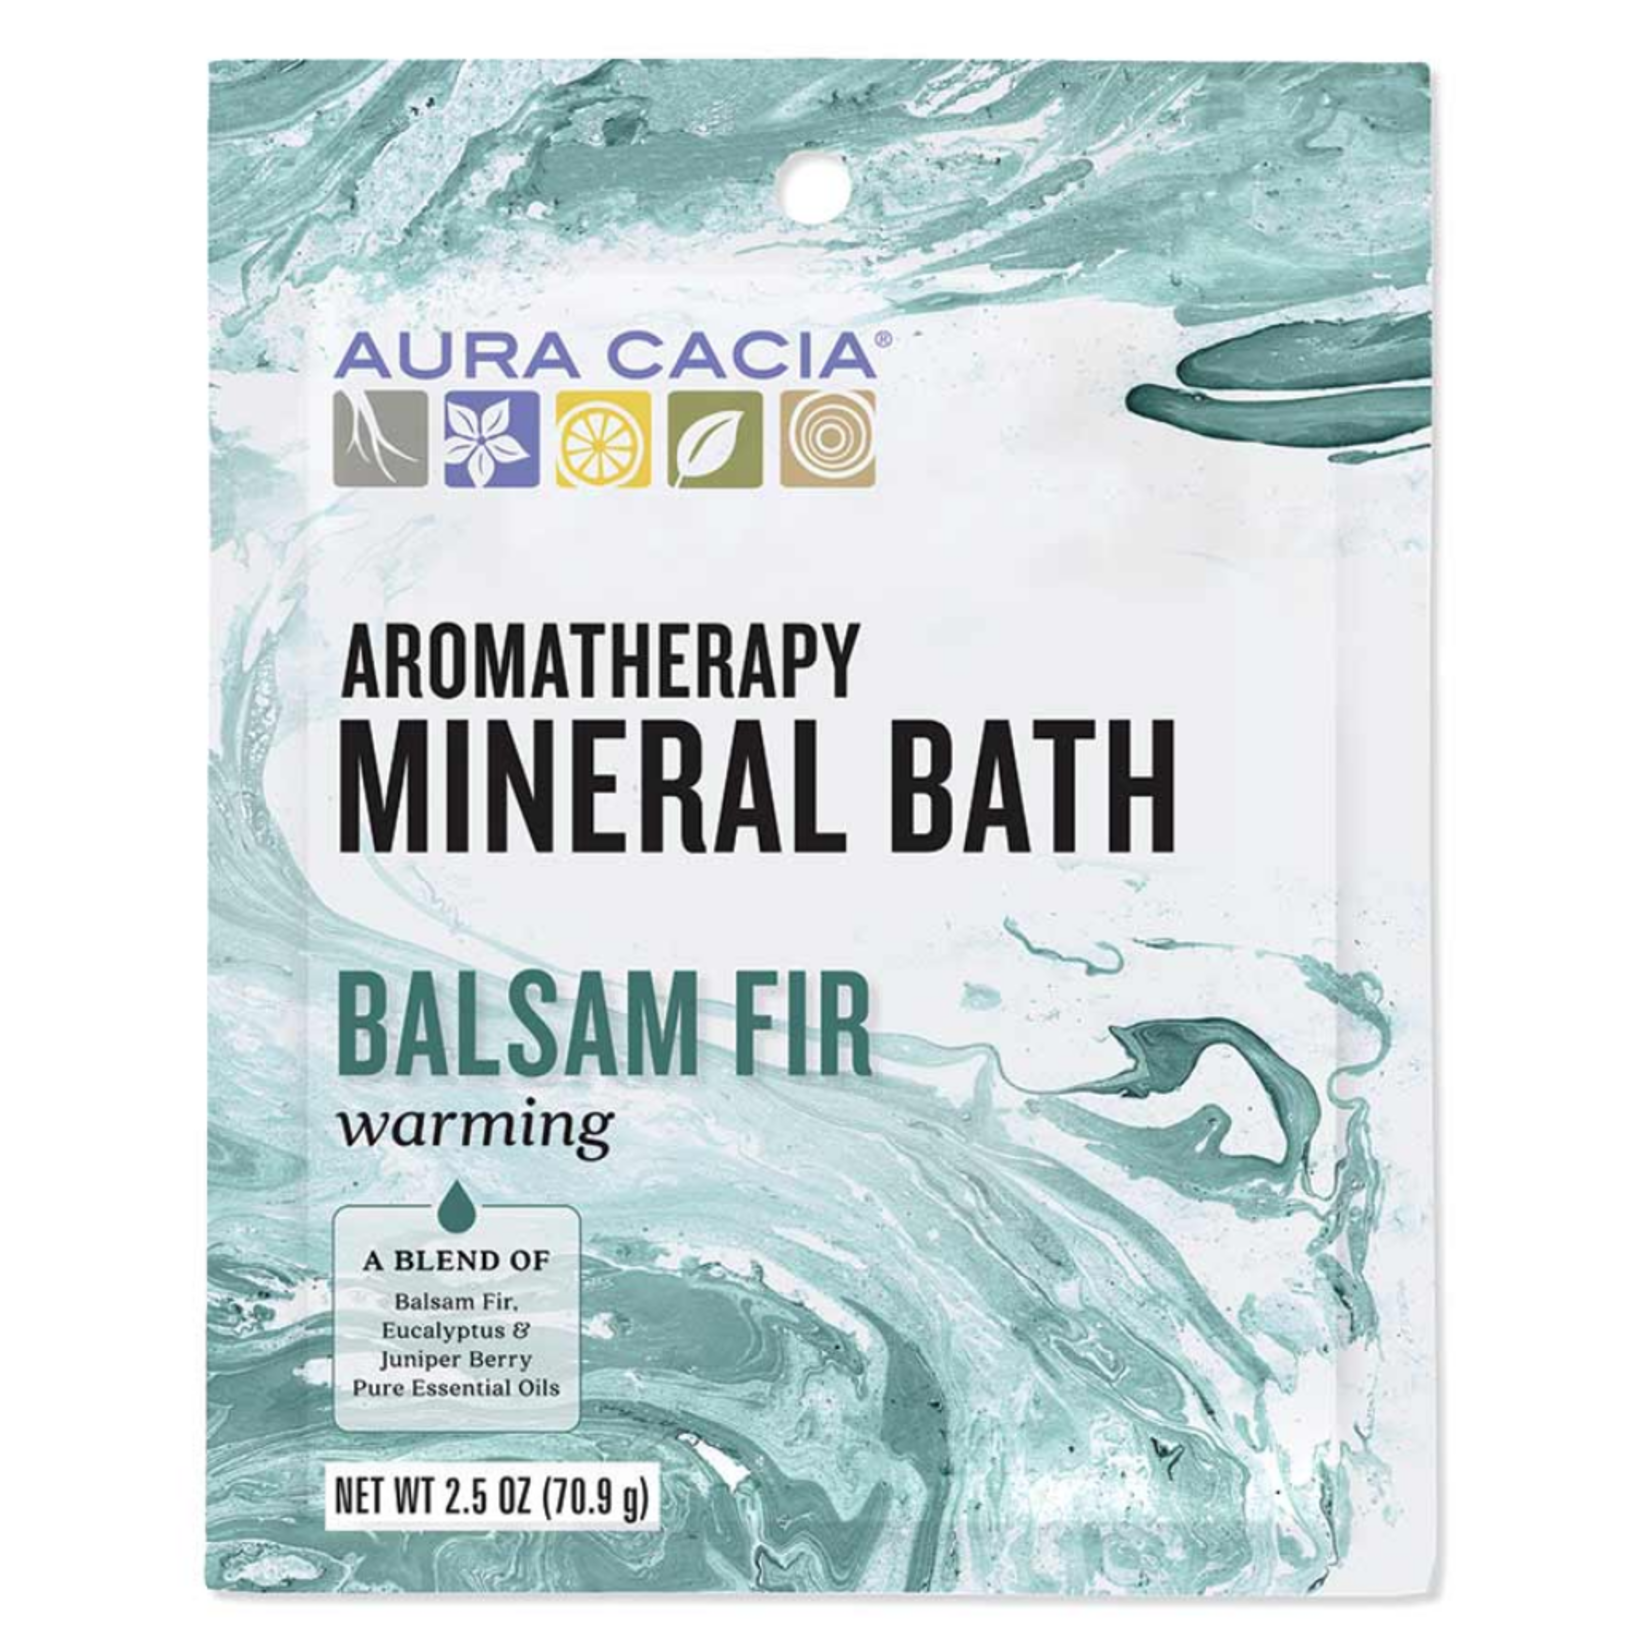 Aura Cacia Mineral Bath 2.5oz - Warming Balsam Fir